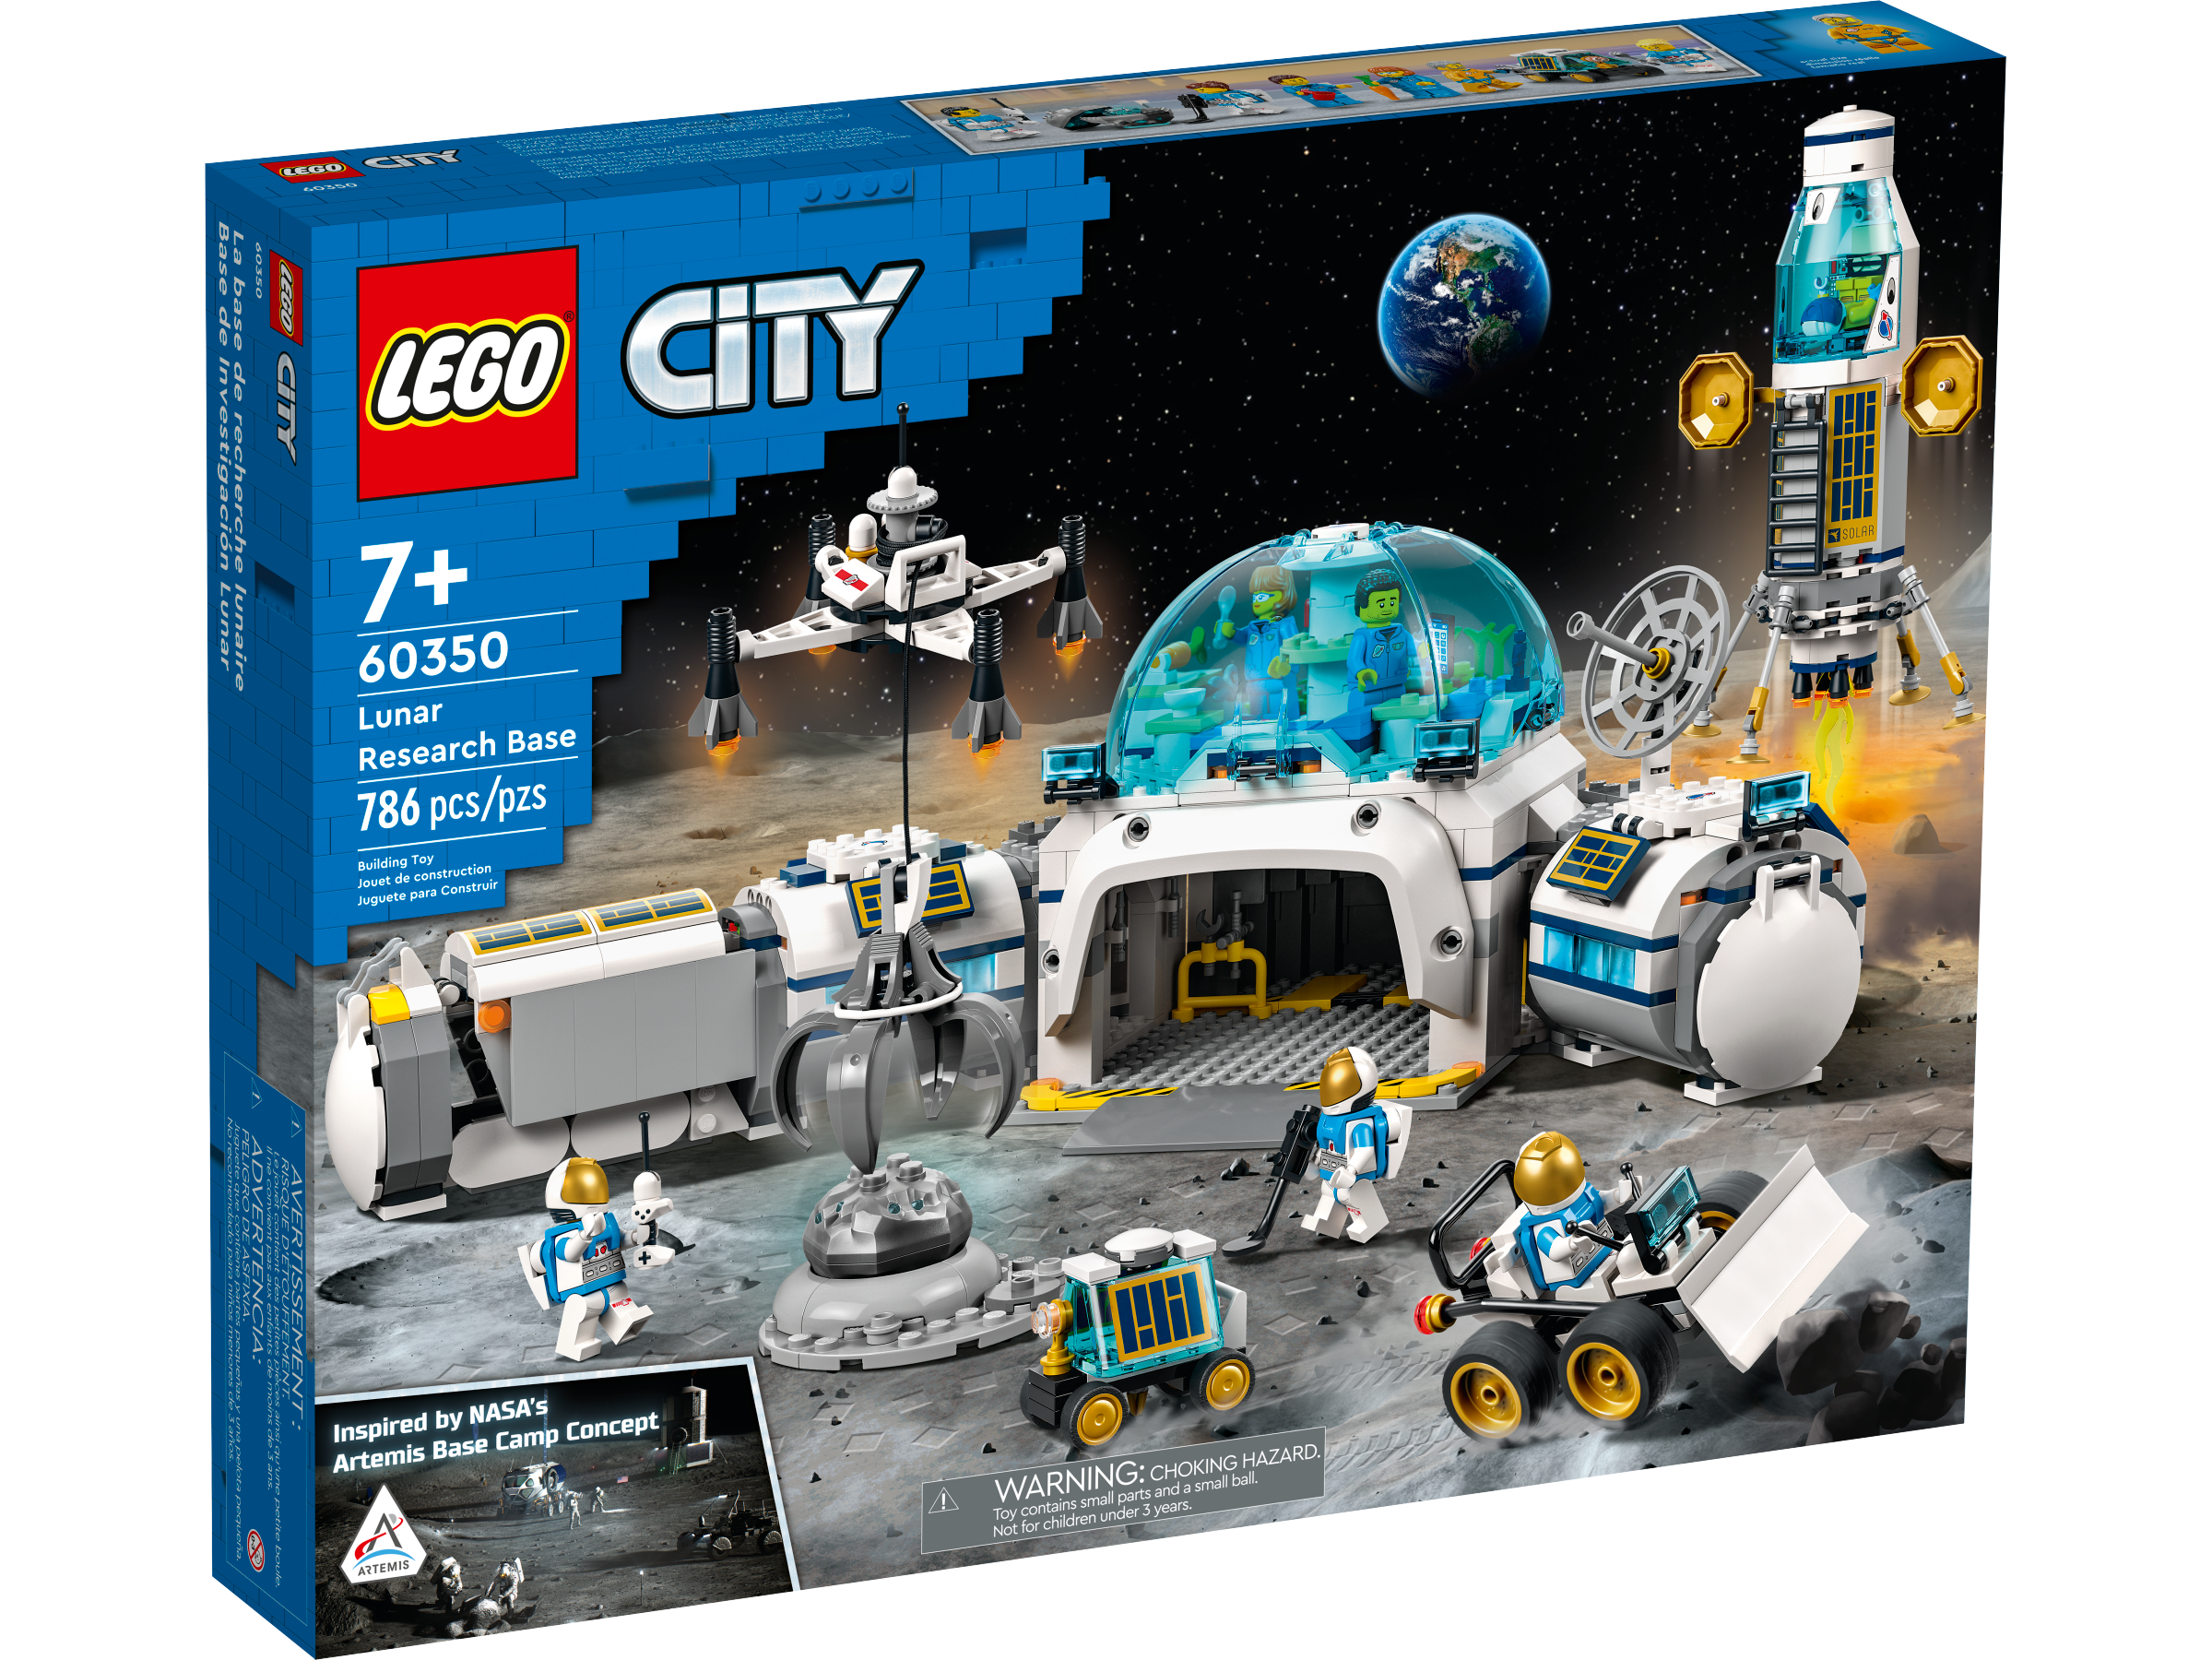 Socialisme herhaling verontschuldigen LEGO® Space Toys & Sets | Official LEGO® Shop US